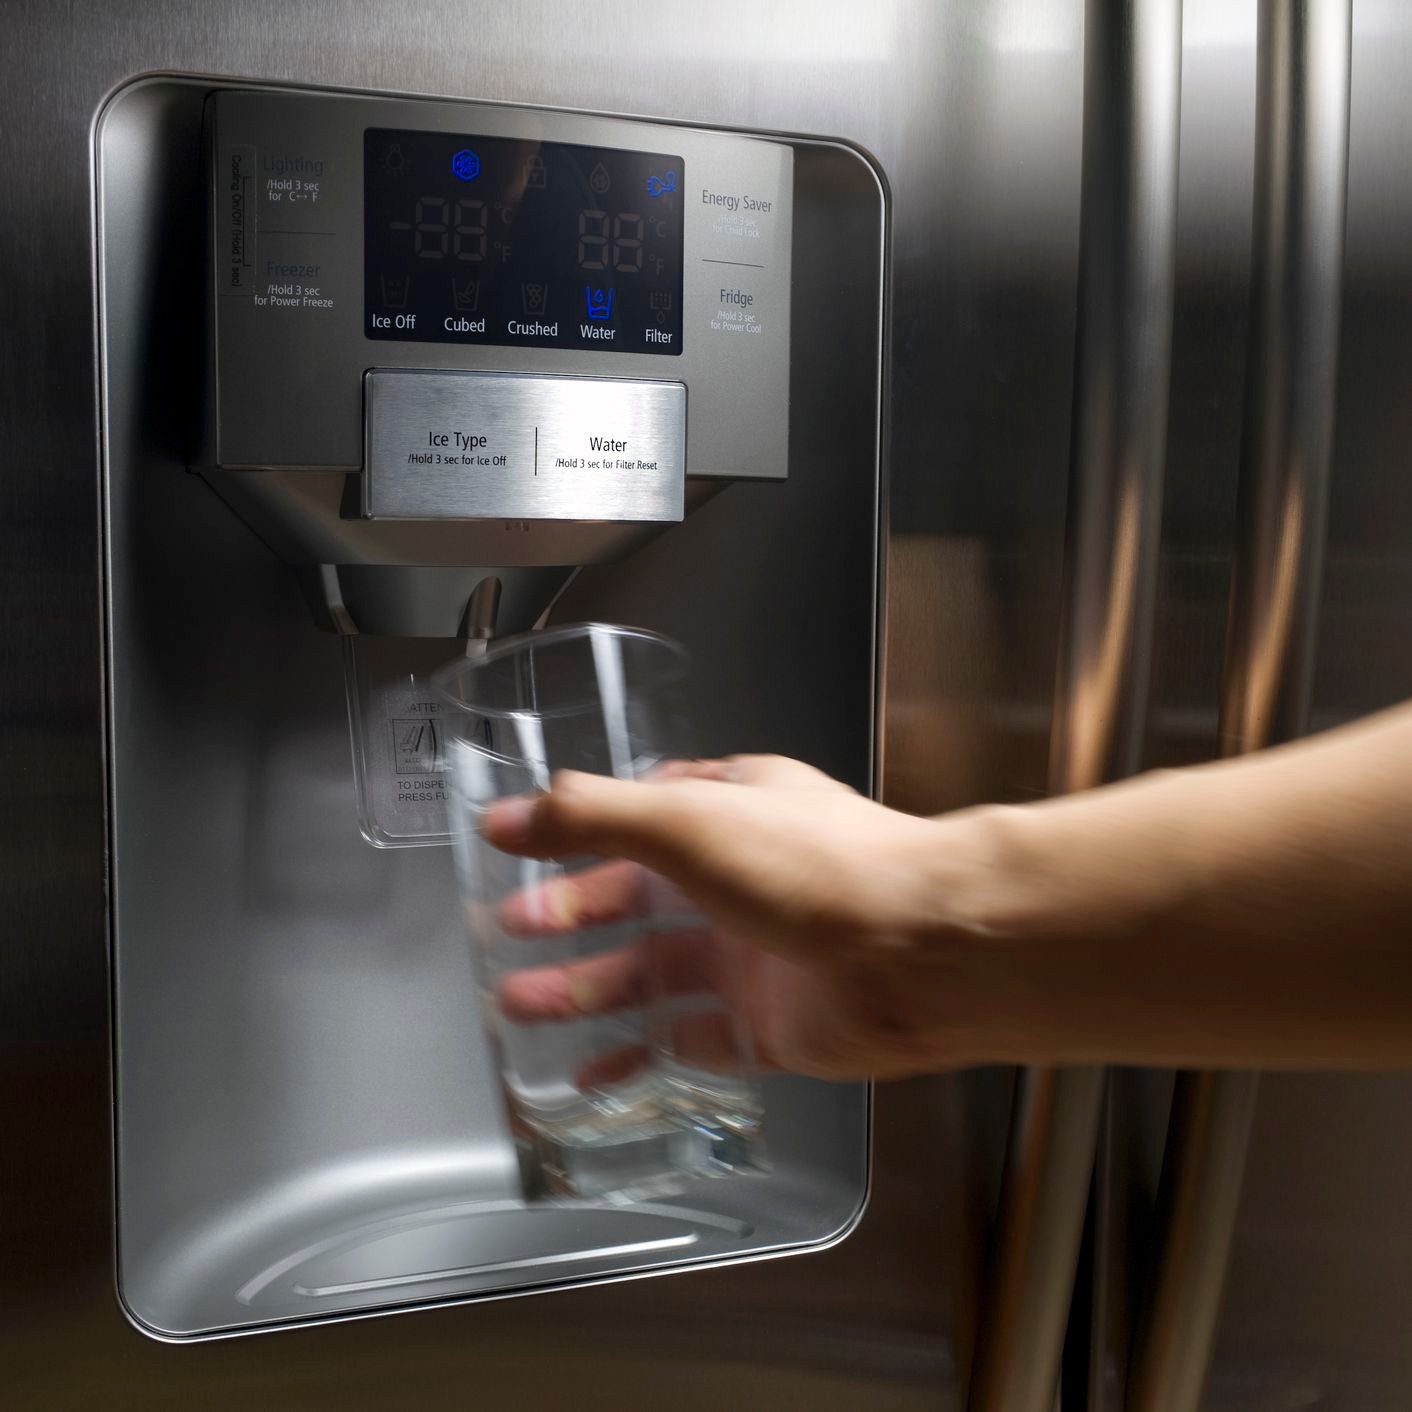 Горячую воду в холодильник. Холодильник Water Dispenser. LG Electronics Water Dispenser холодильник. Холодильник LG С диспенсером для воды и льда. Холодильник с диспенсером и льдогенератором.